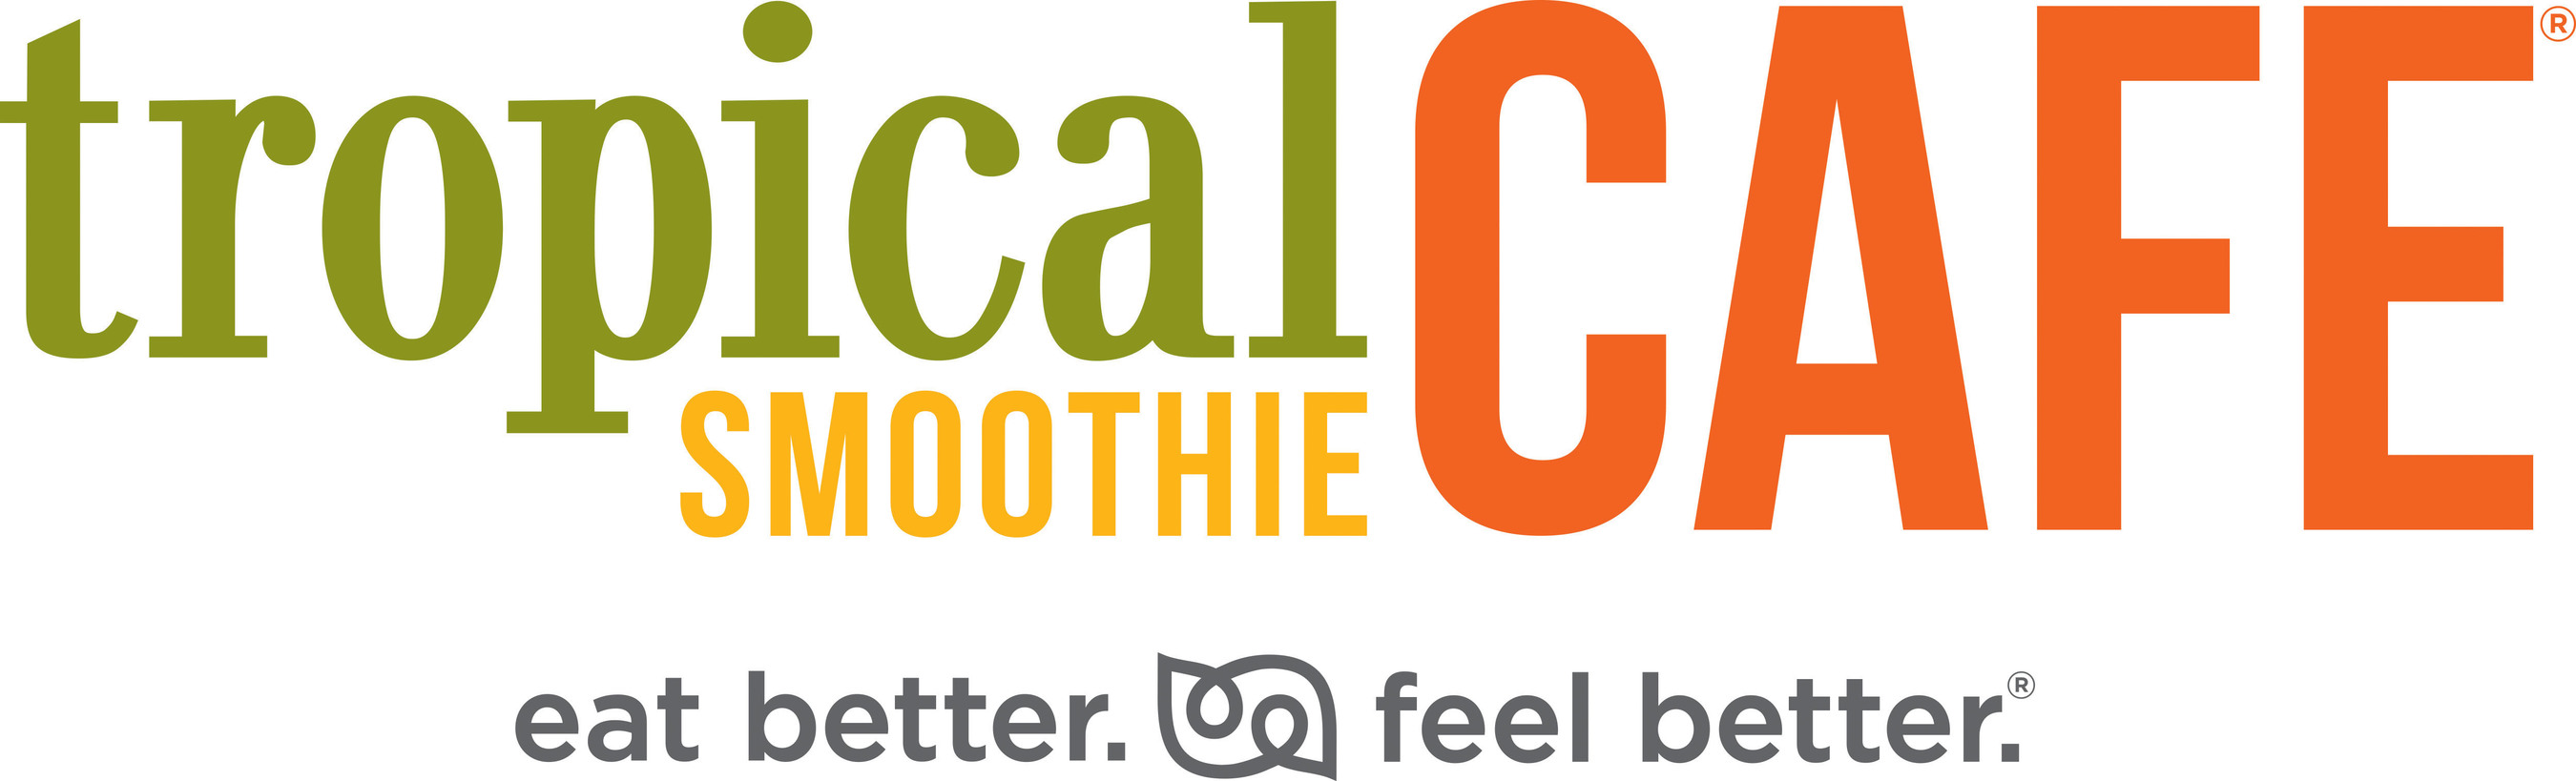 Tropical Smoothie Cafe logo.